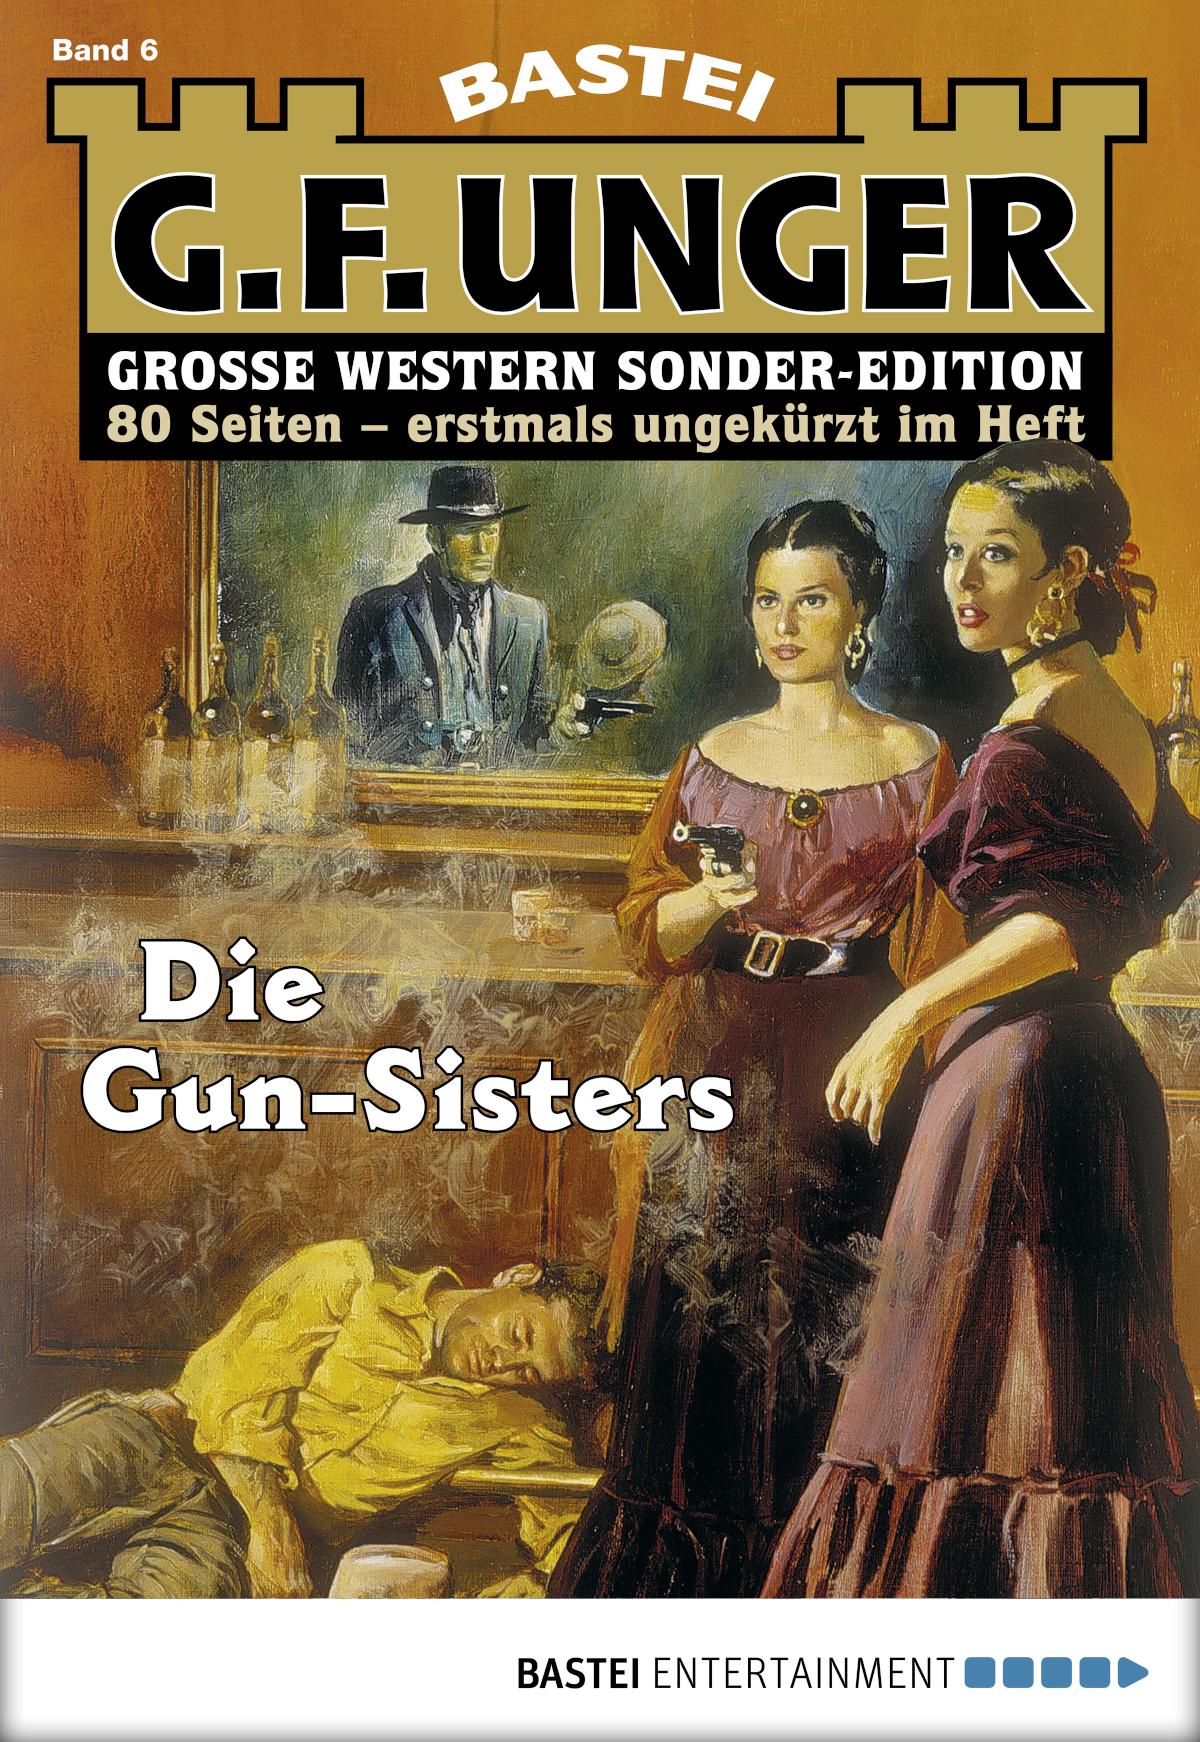 G. F. Unger Sonder-Edition 6 Die Gun-Sisters